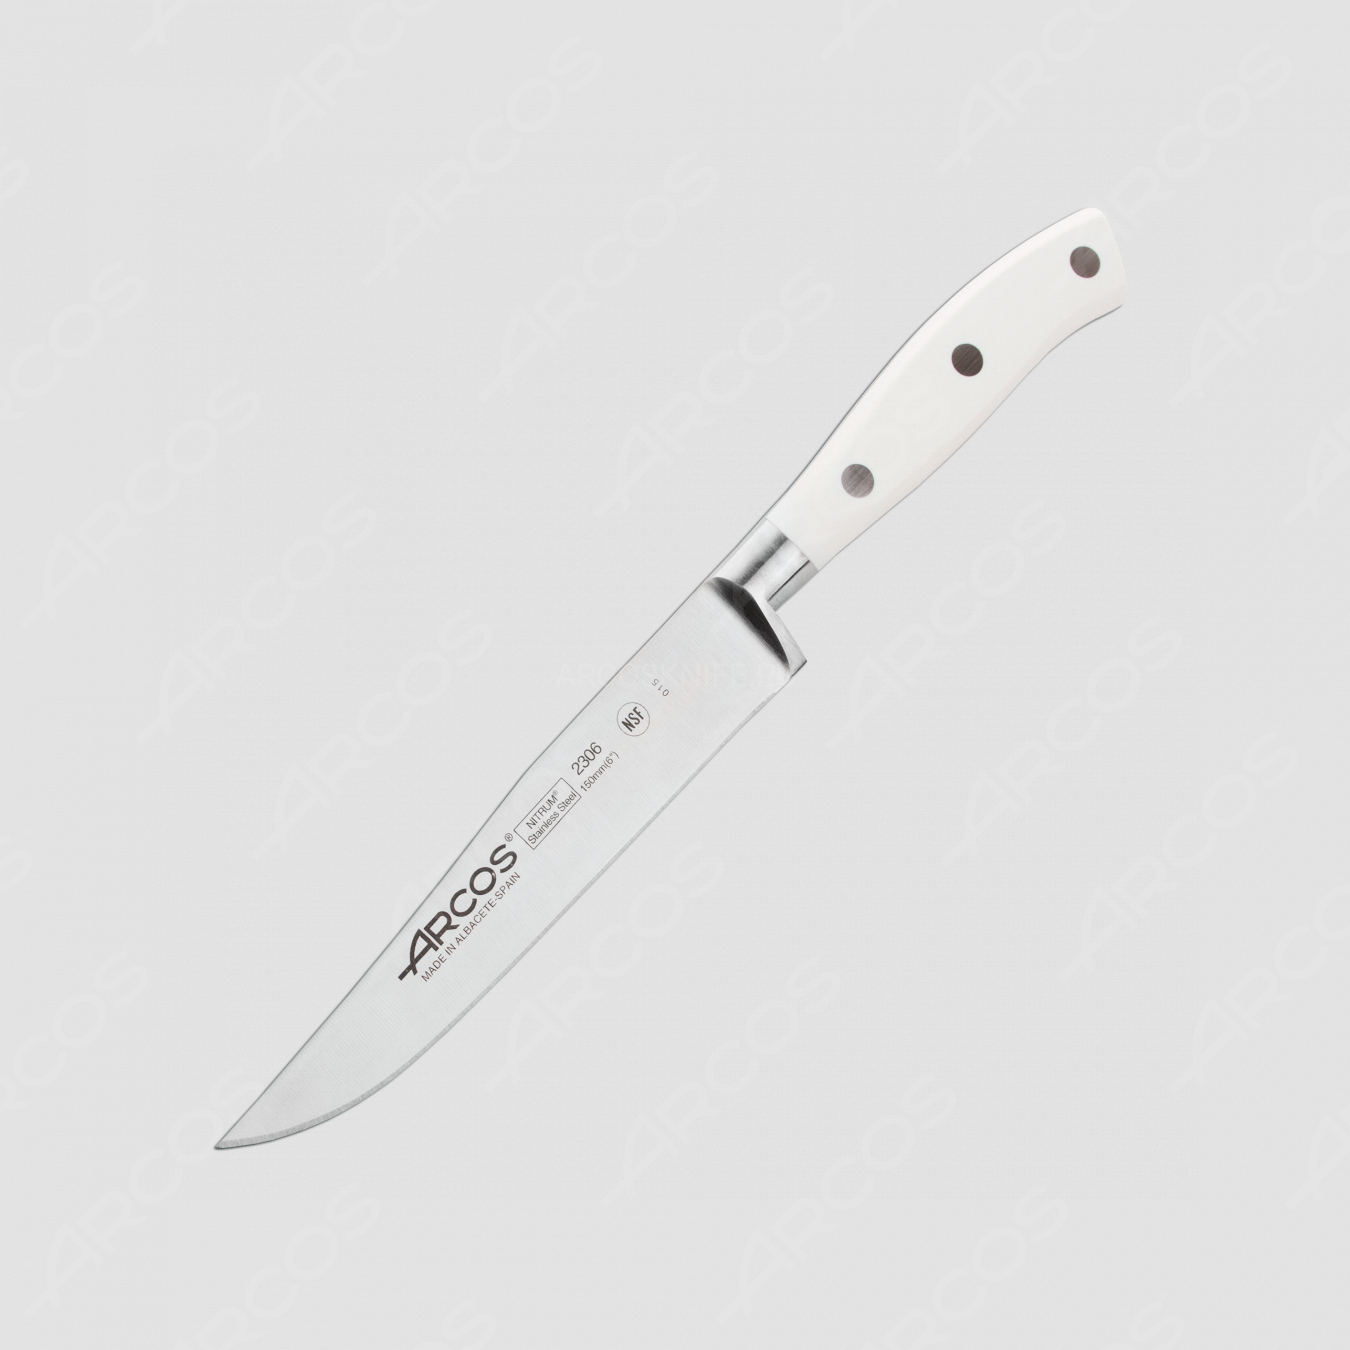 Нож кухонный универсальный, 15 см, серия Riviera Blanca, ARCOS, Испания